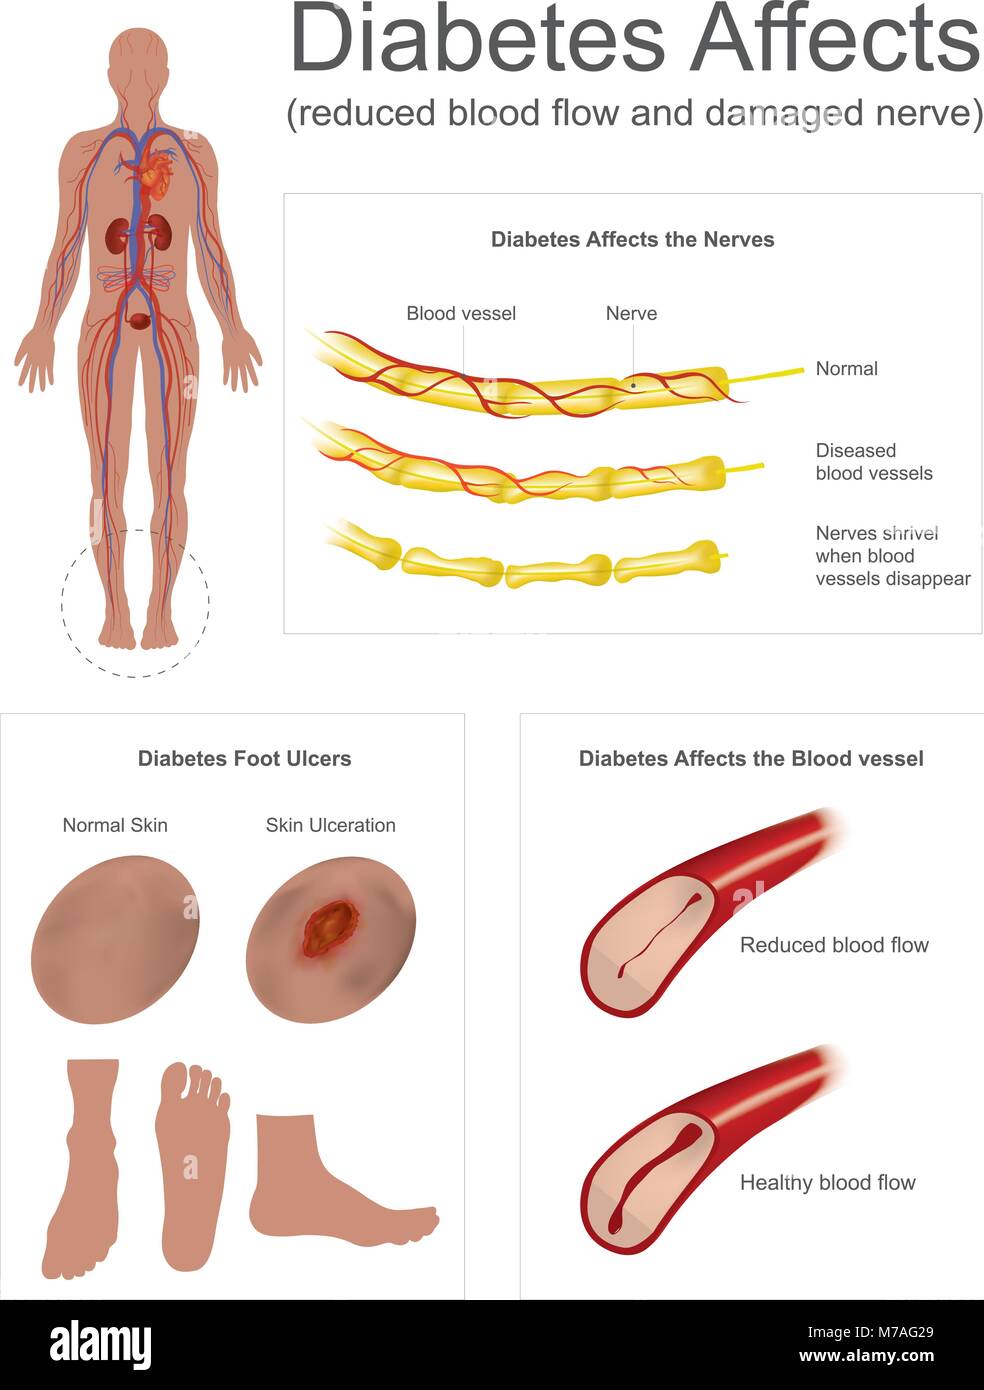 Die Nerven im Bein verkümmern, wenn Blutgefäße verschwinden. Ulcera sind eine häufige Komplikation schlecht kontrollierter Diabetes. Info Grafik Vektor. Stock Vektor